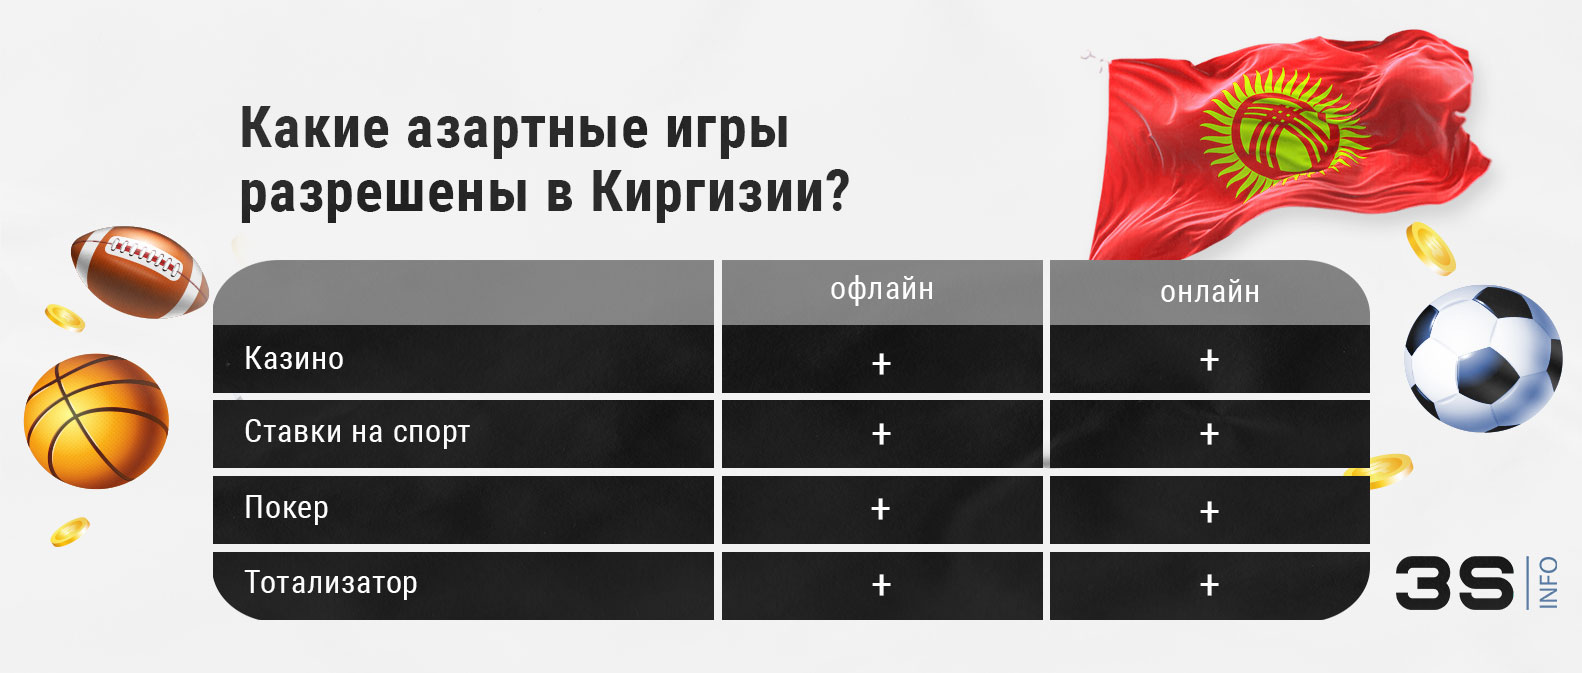 Какие азартные игры (казино, ставки на спорт) разрешены в Киргизии? Читайте на 3SNET